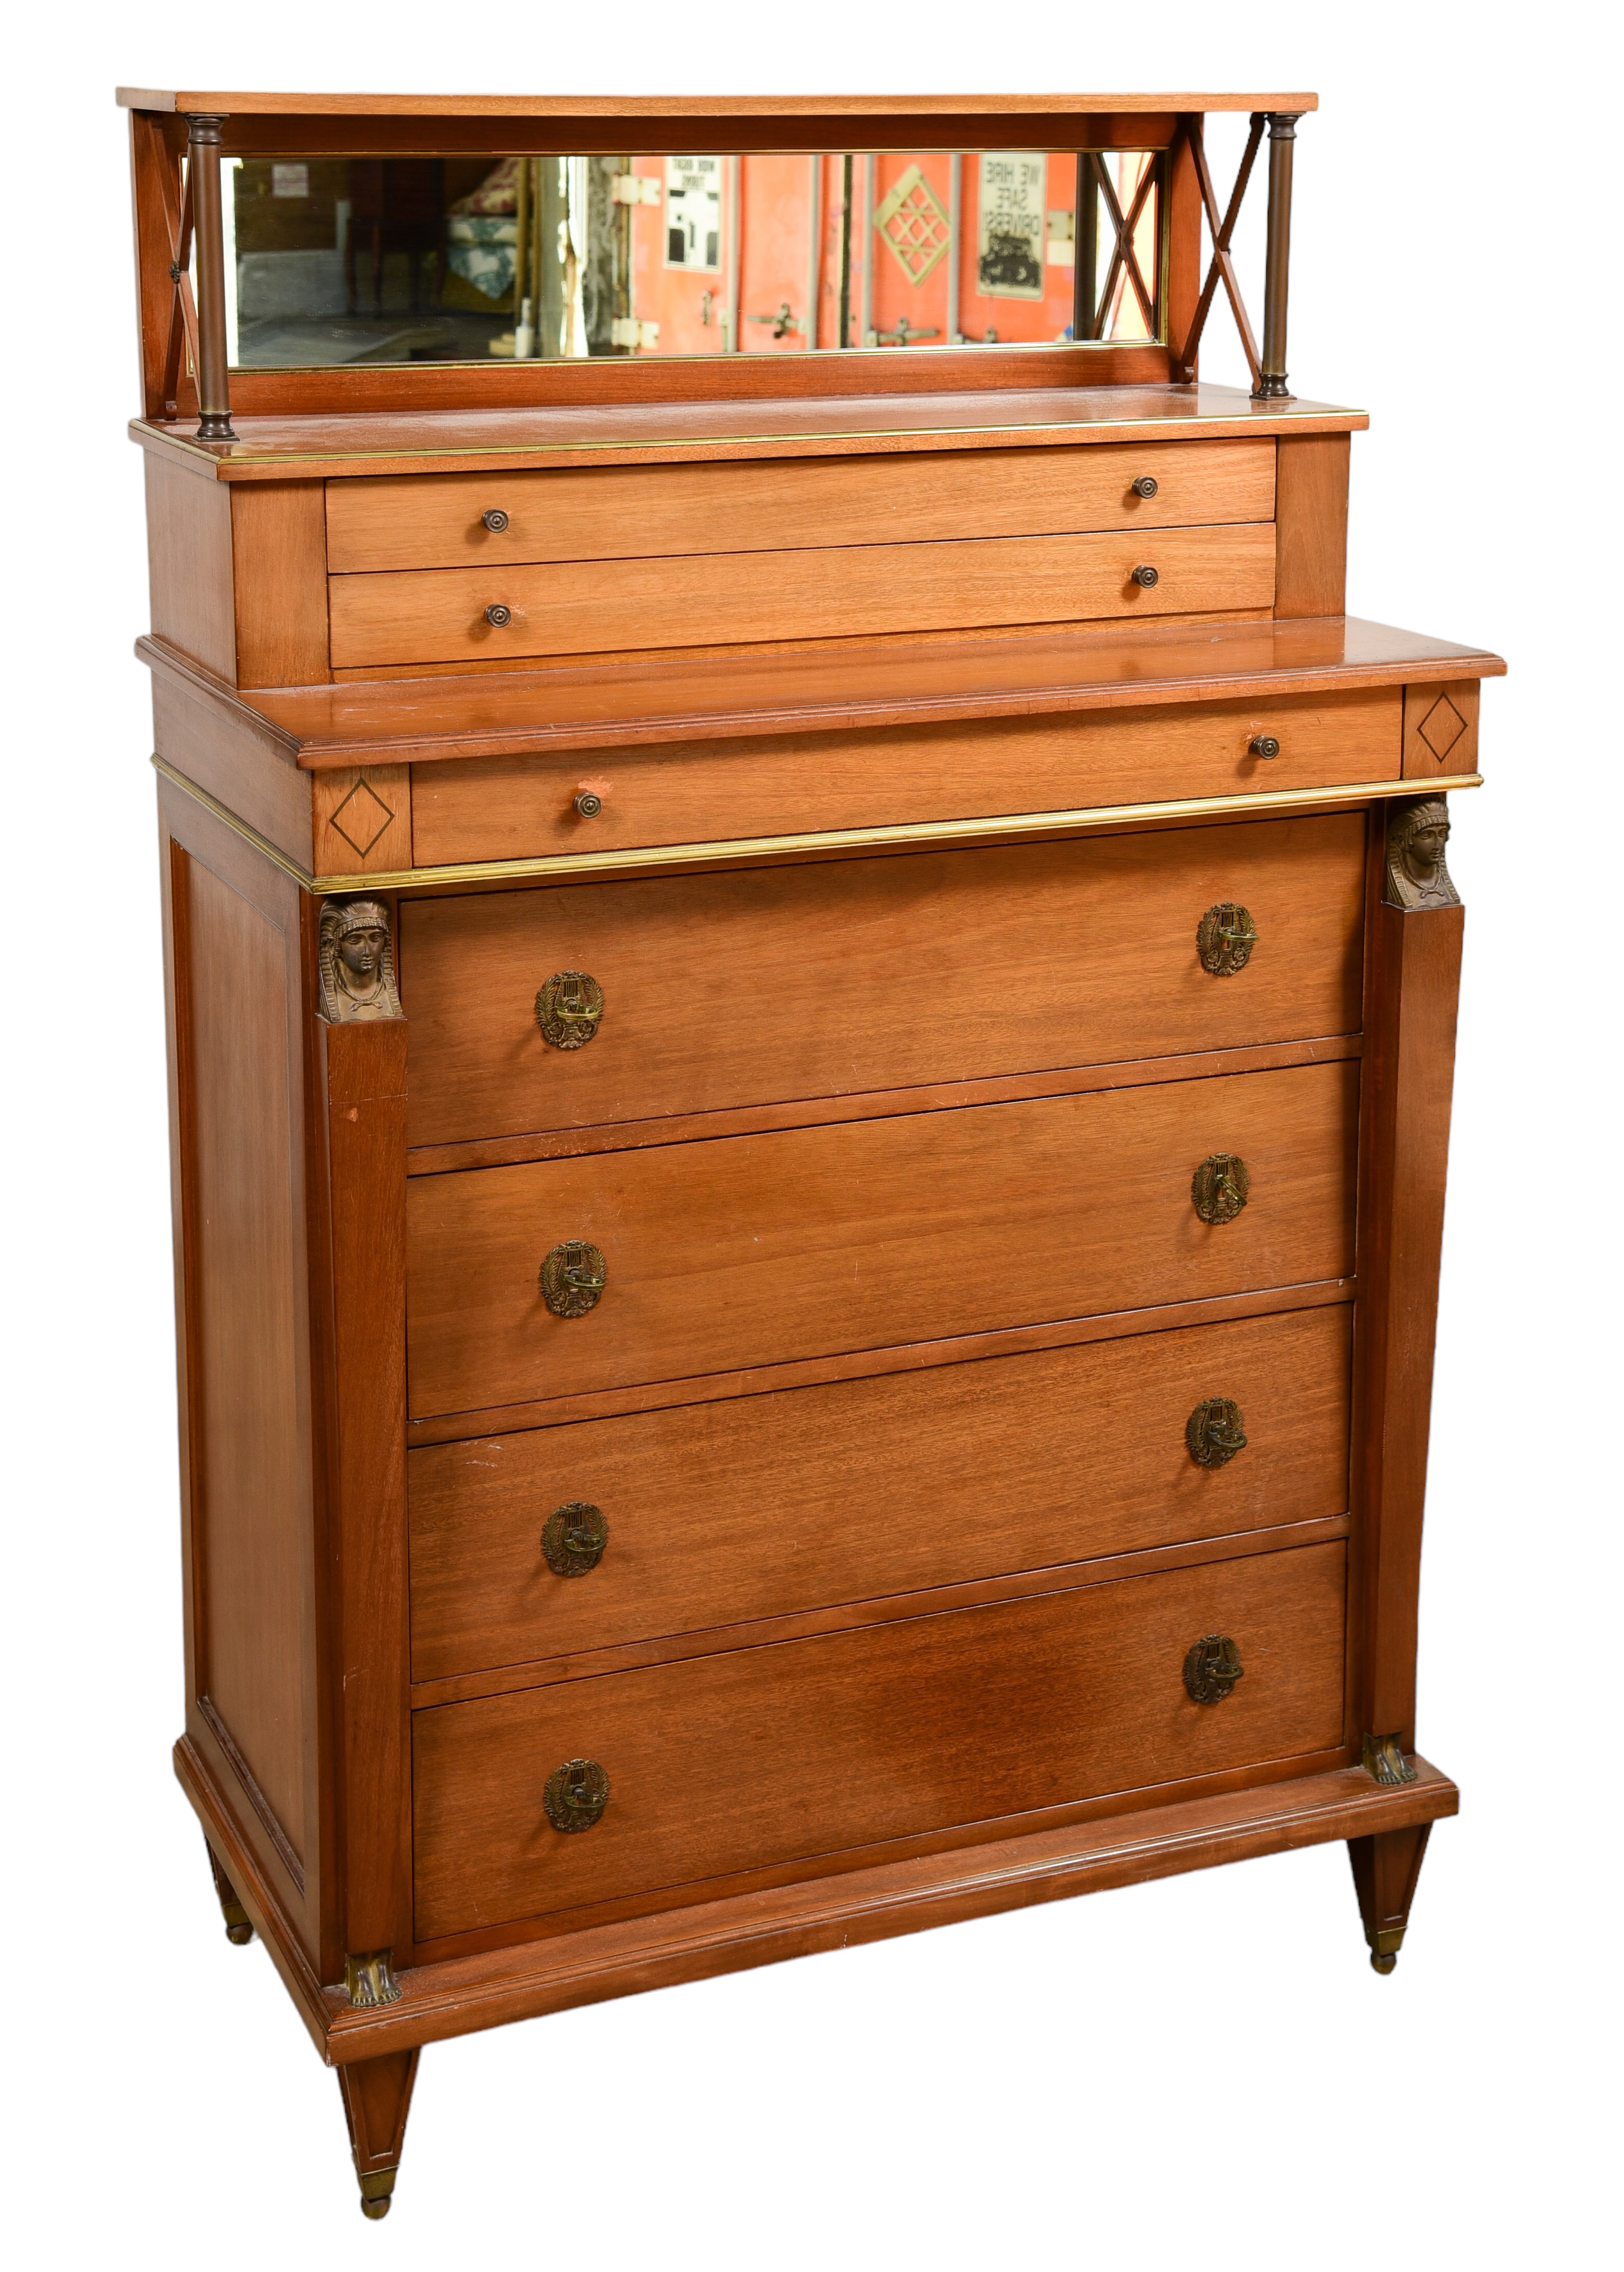 Regency style mahogany chest of